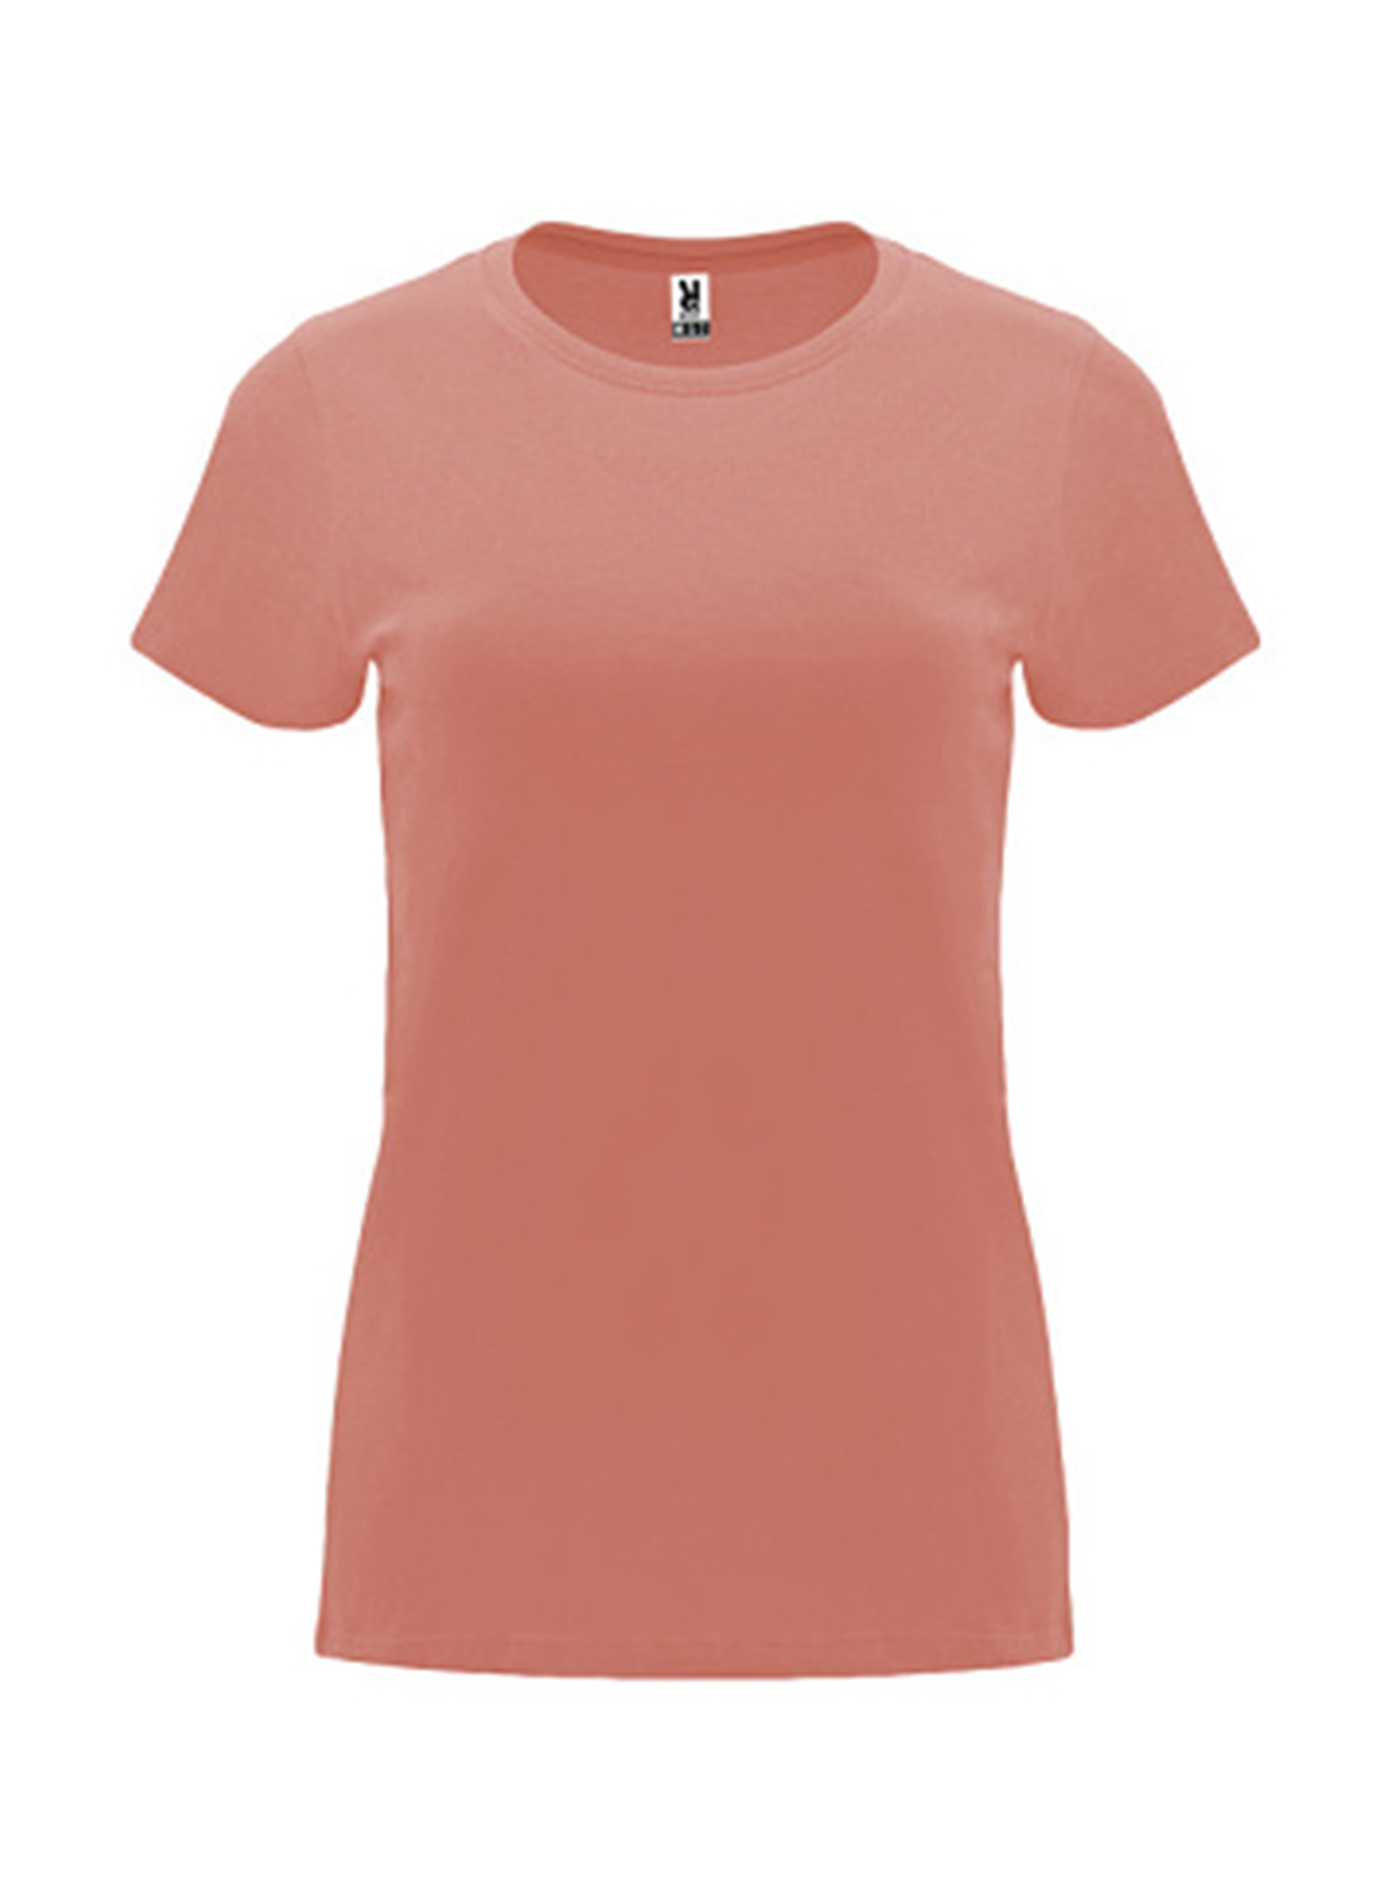 Dámské tričko Roly Capri - Elektrická oranžová M